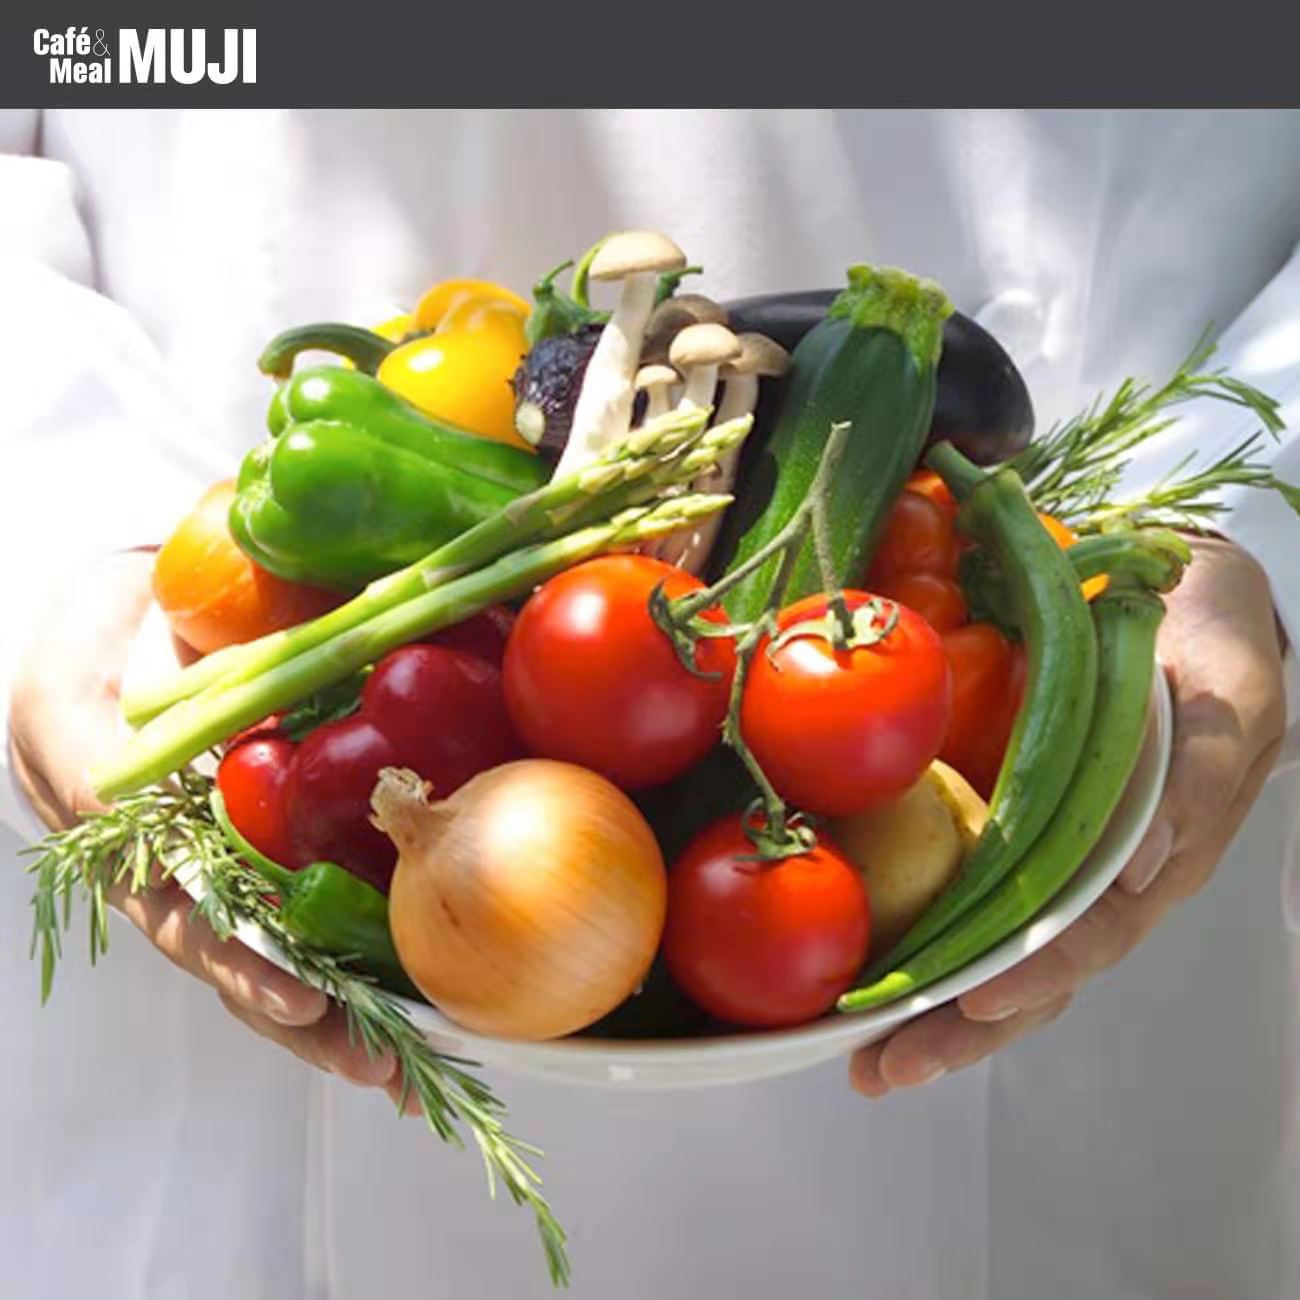 成為Café&Meal MUJI的一分子，一起傳遞「素之食」的健康飲食理念。 職位空缺：